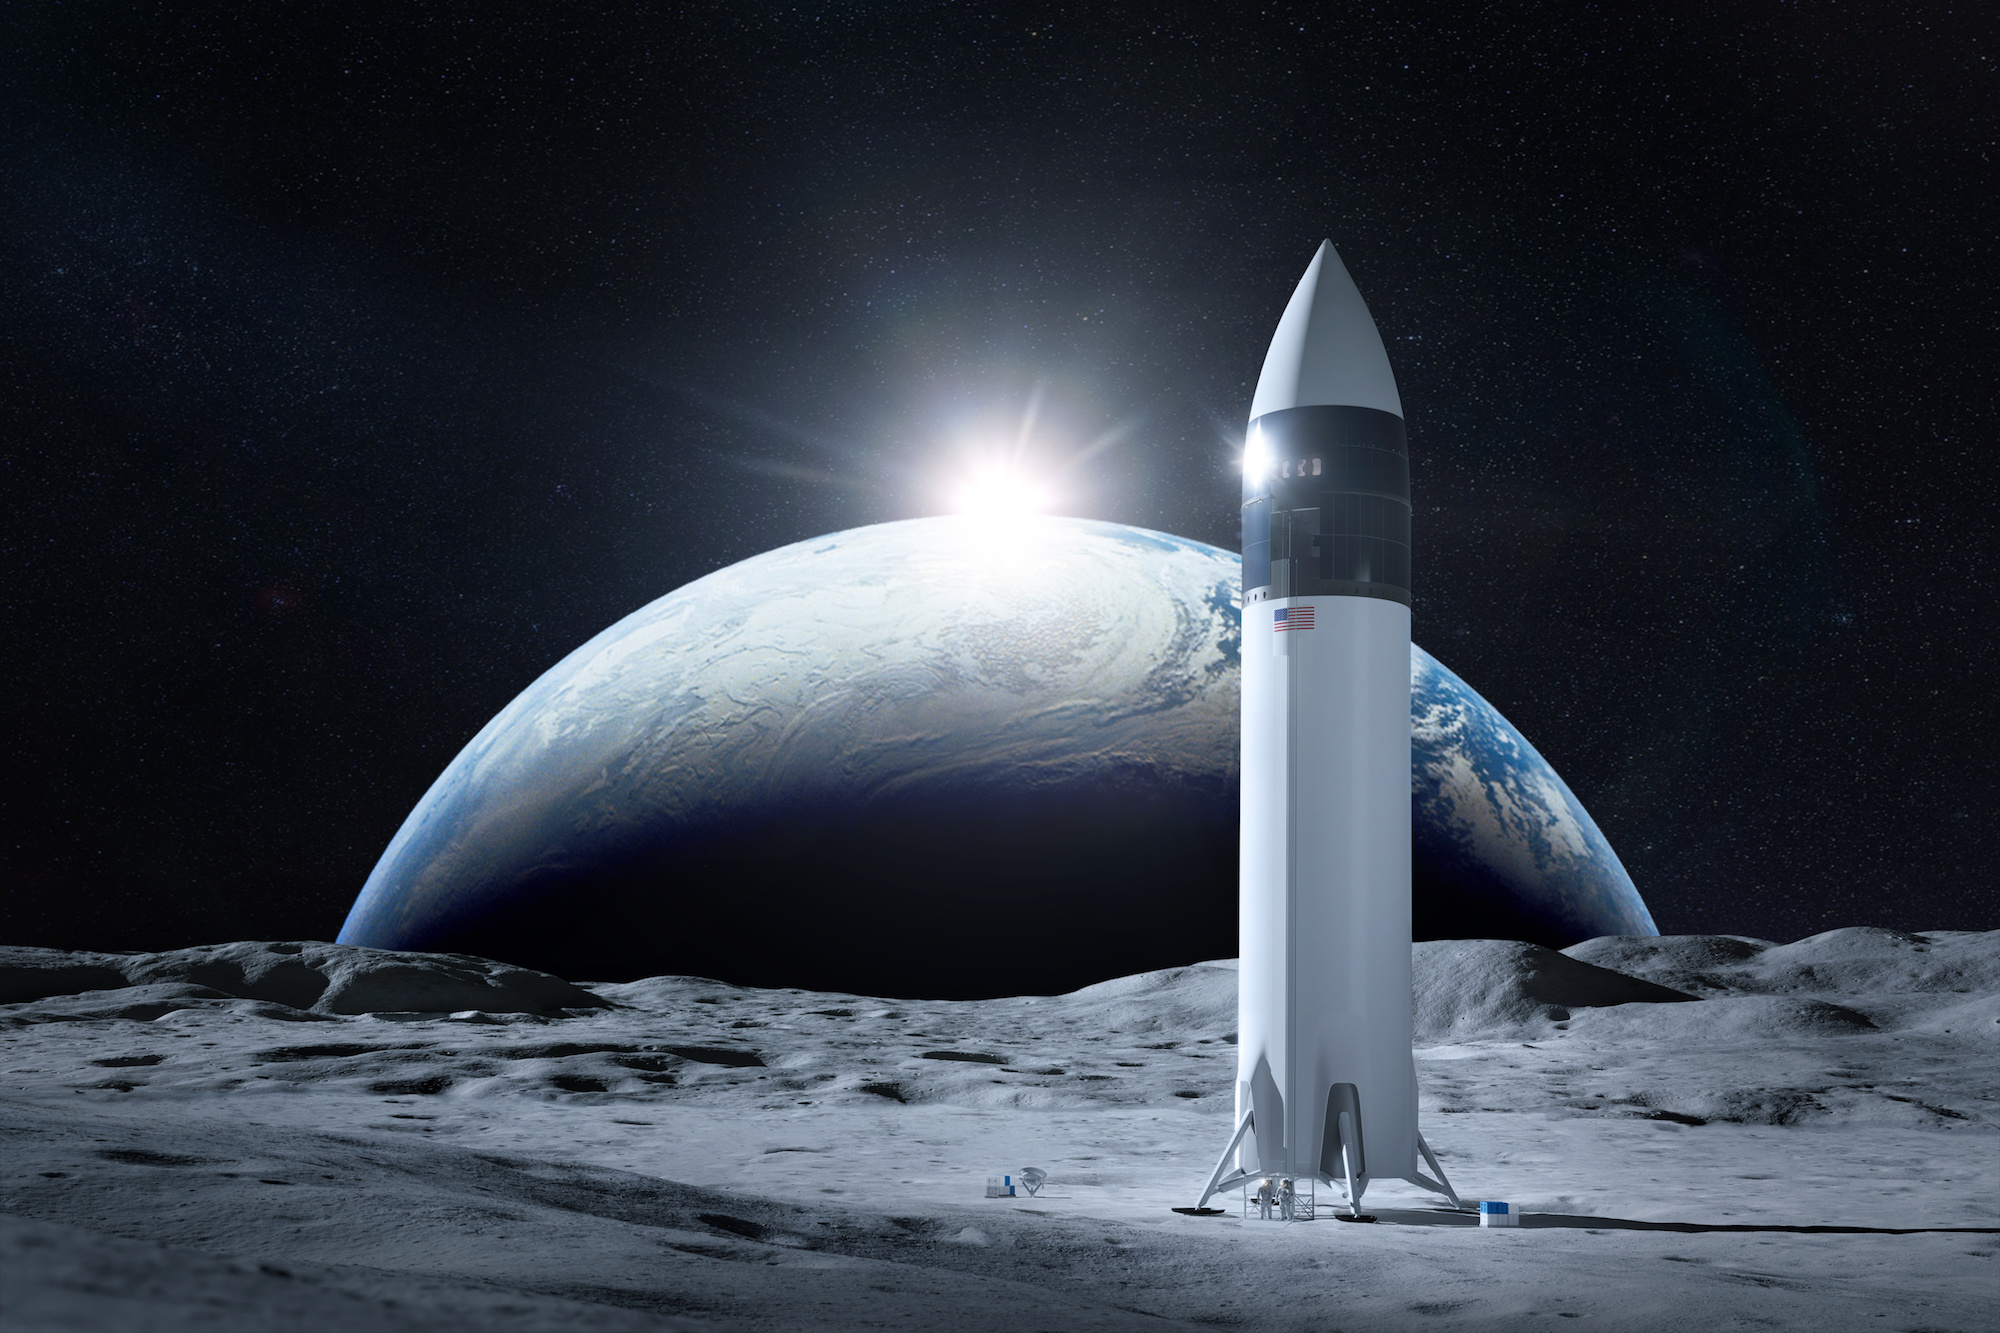 La Nasa envisage un atterrissage lunaire avec équipage dès 2026. Ici, un vaisseau spatial sur la surface de la Lune avec la planète Terre en toile de fond (éléments de cette image fournis par la Nasa). © Paopano, Adobe Stock